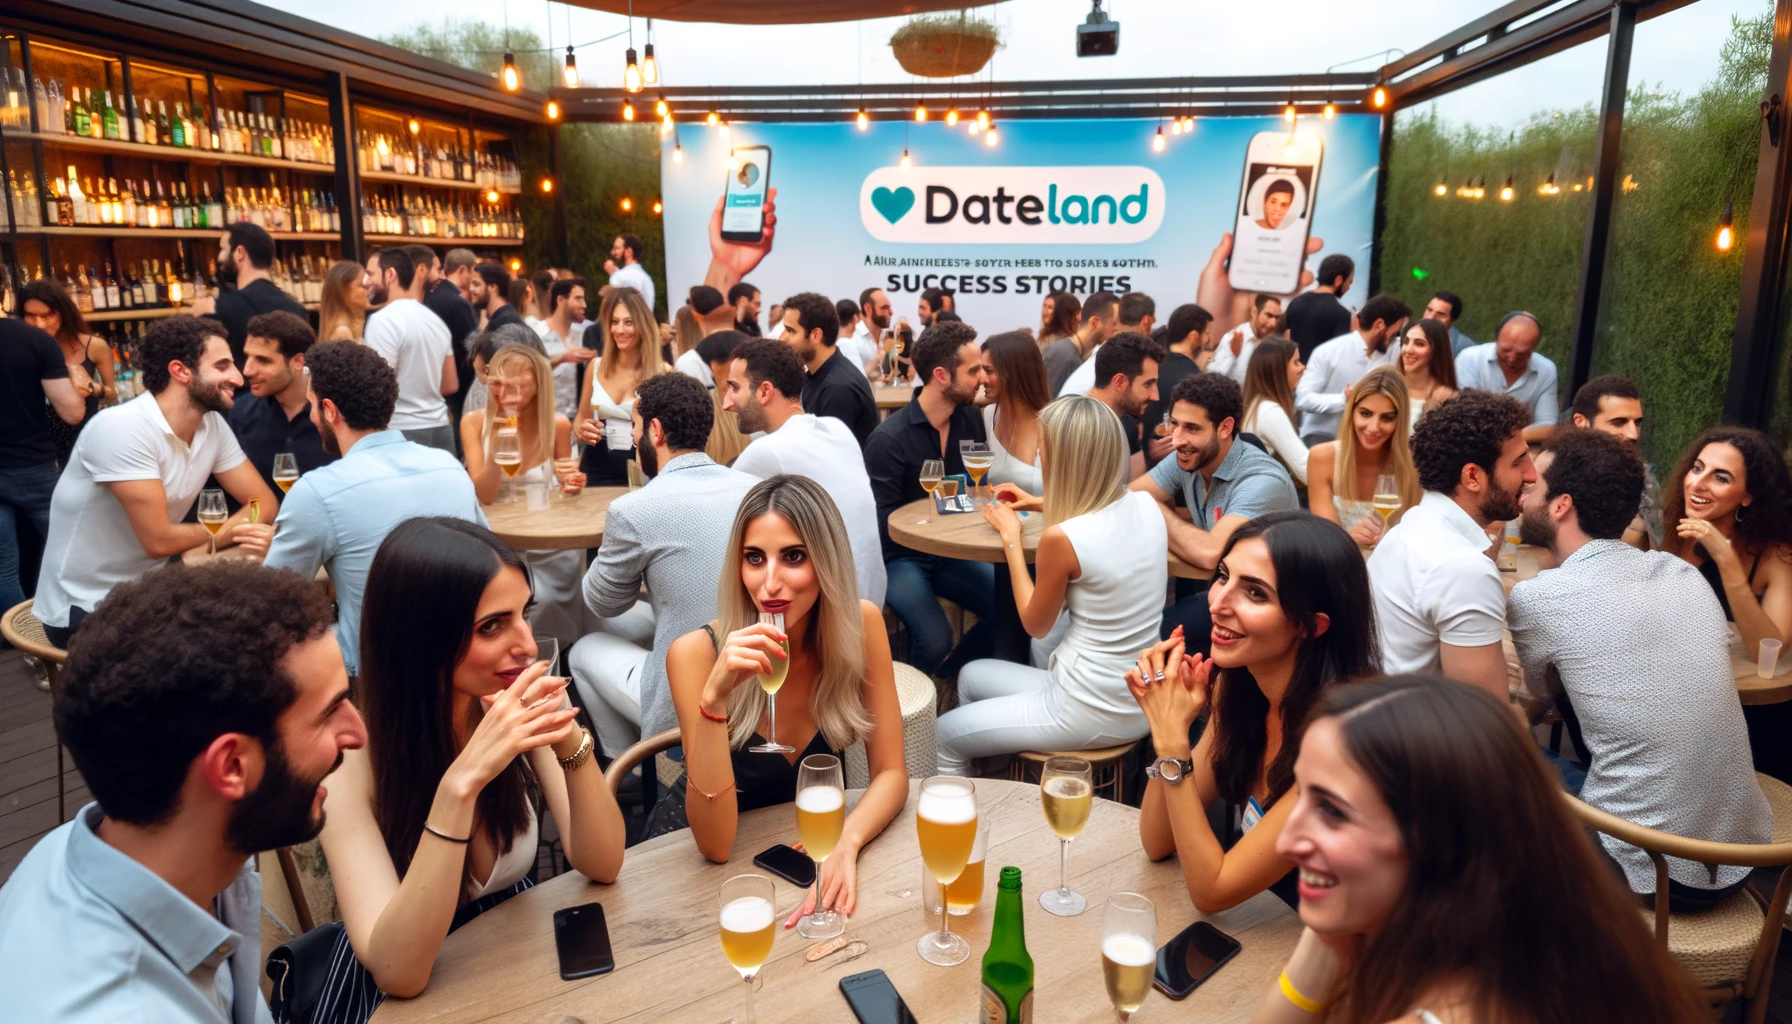 ישראלים מחפשי זוגיות נפגשים באירוע של אפליקציית דייטלנד